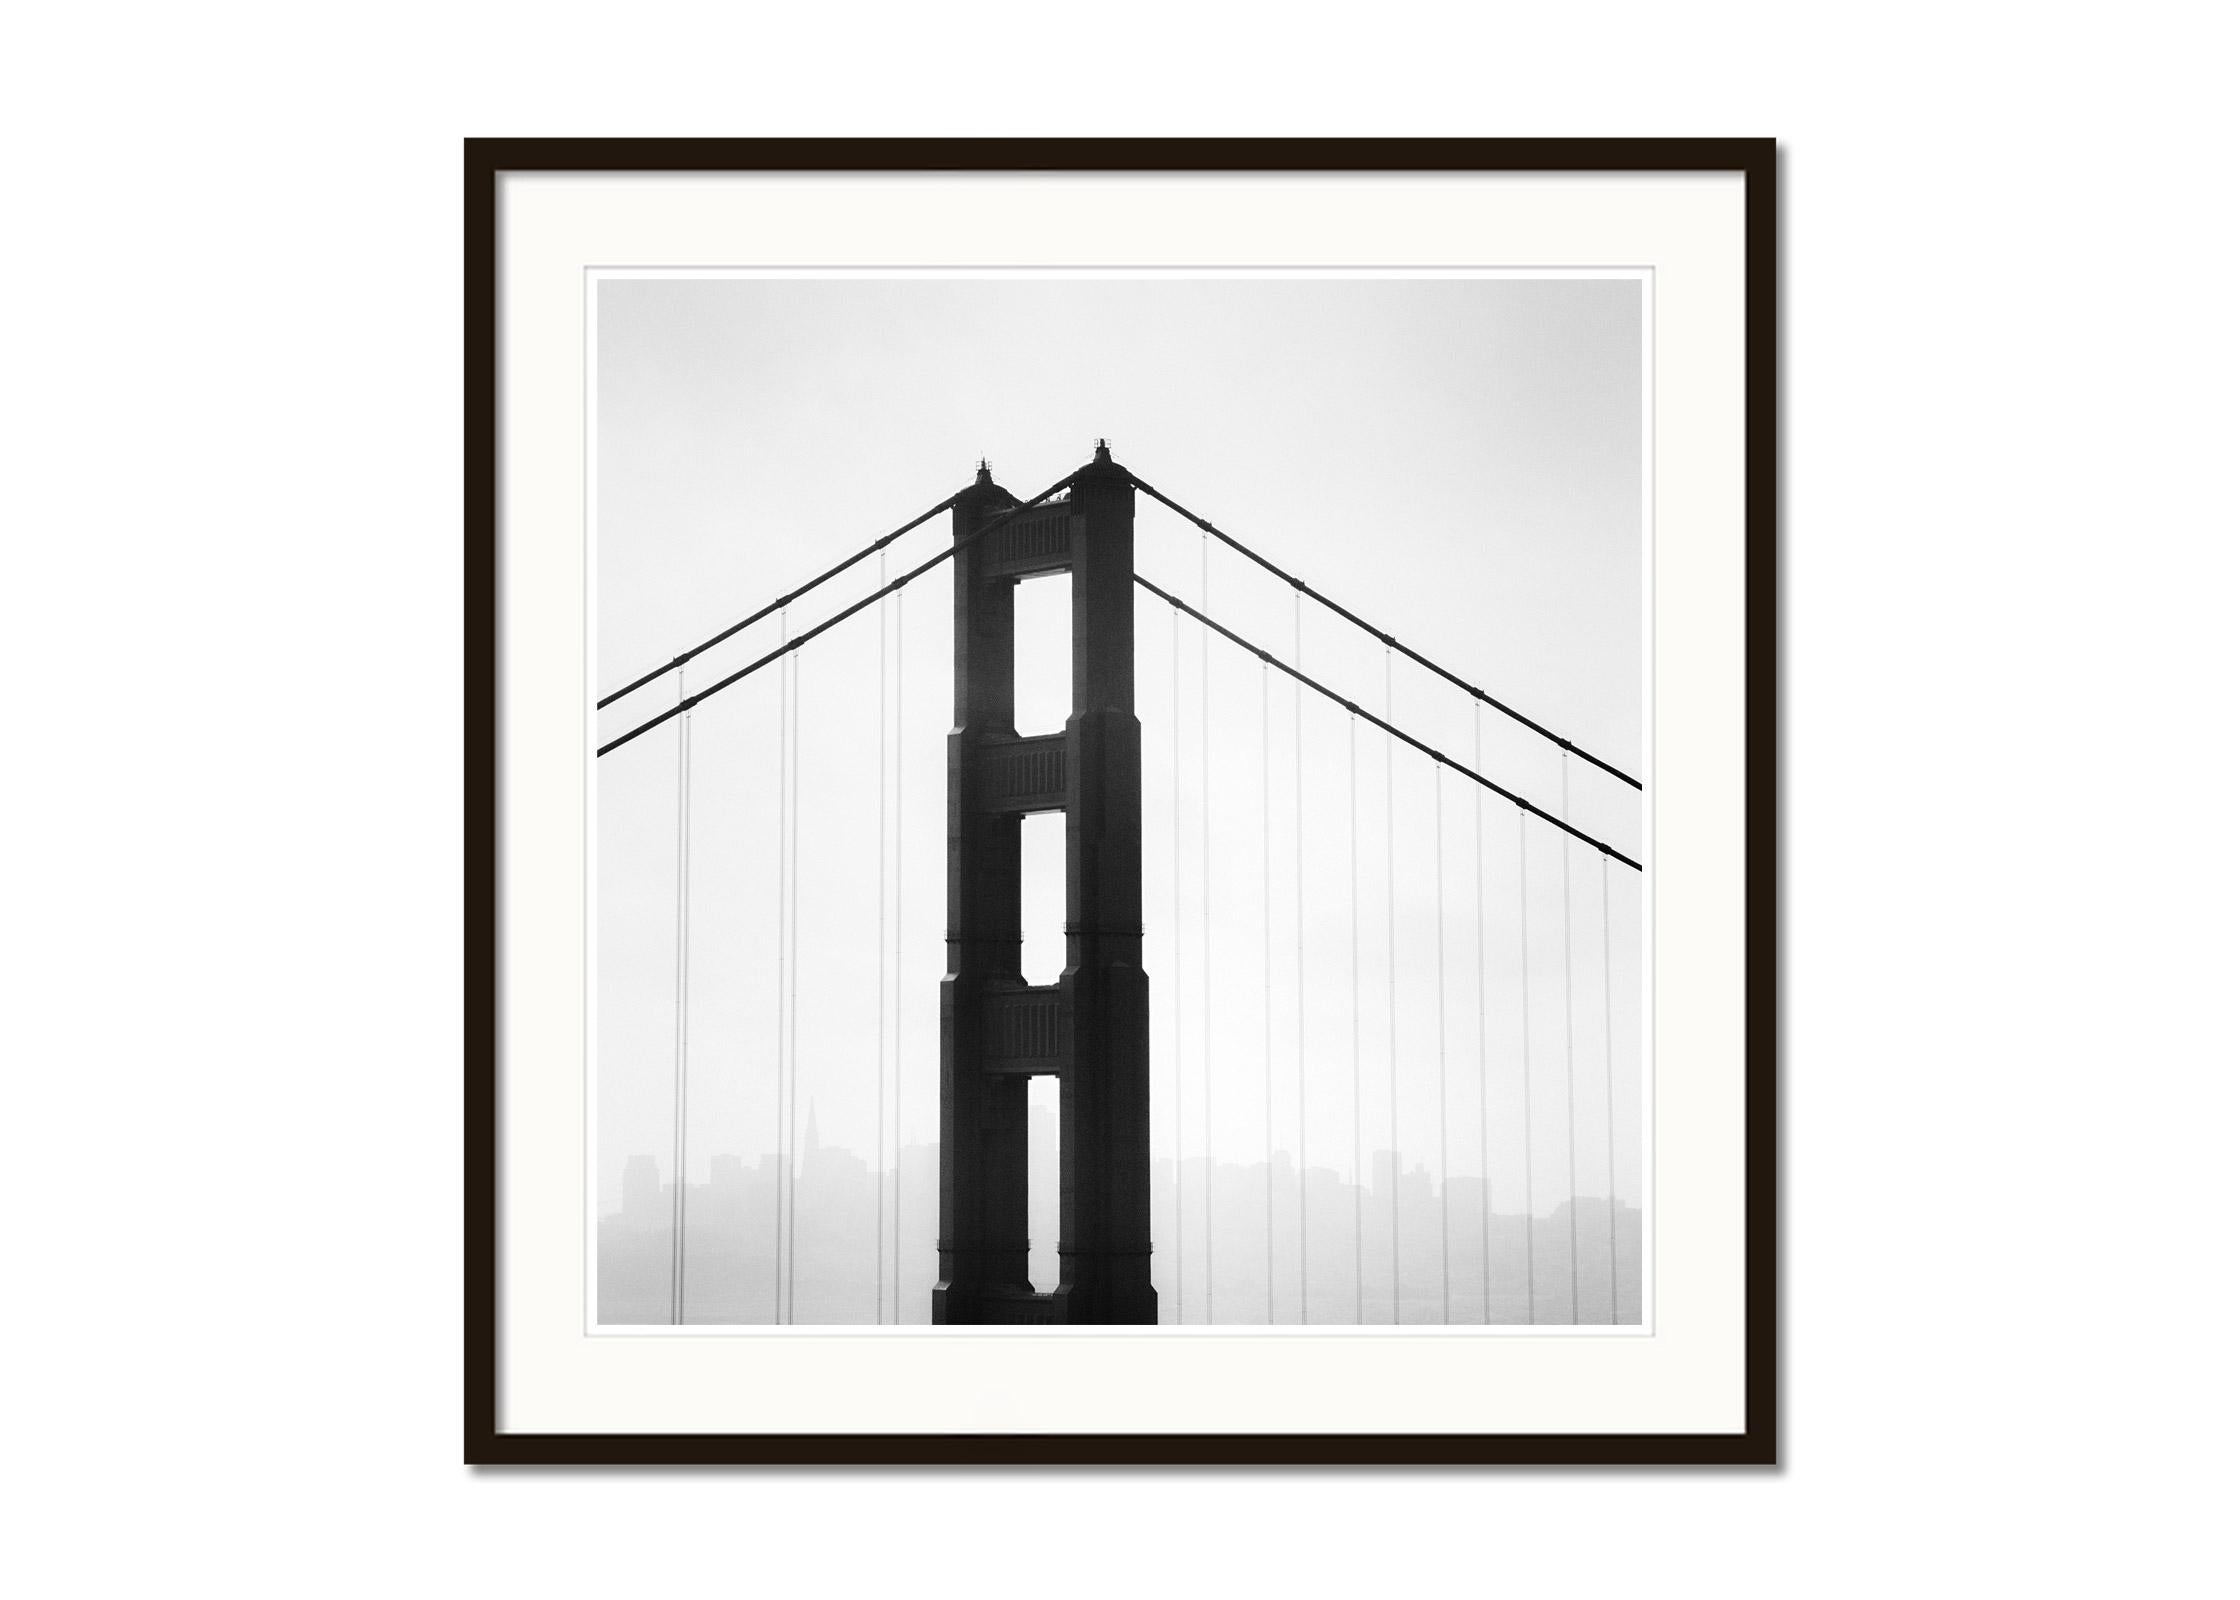 Golden Gate Bridge, San Francisco, USA, minimalistische schwarz-weiße Landschaft (Grau), Landscape Photograph, von Gerald Berghammer